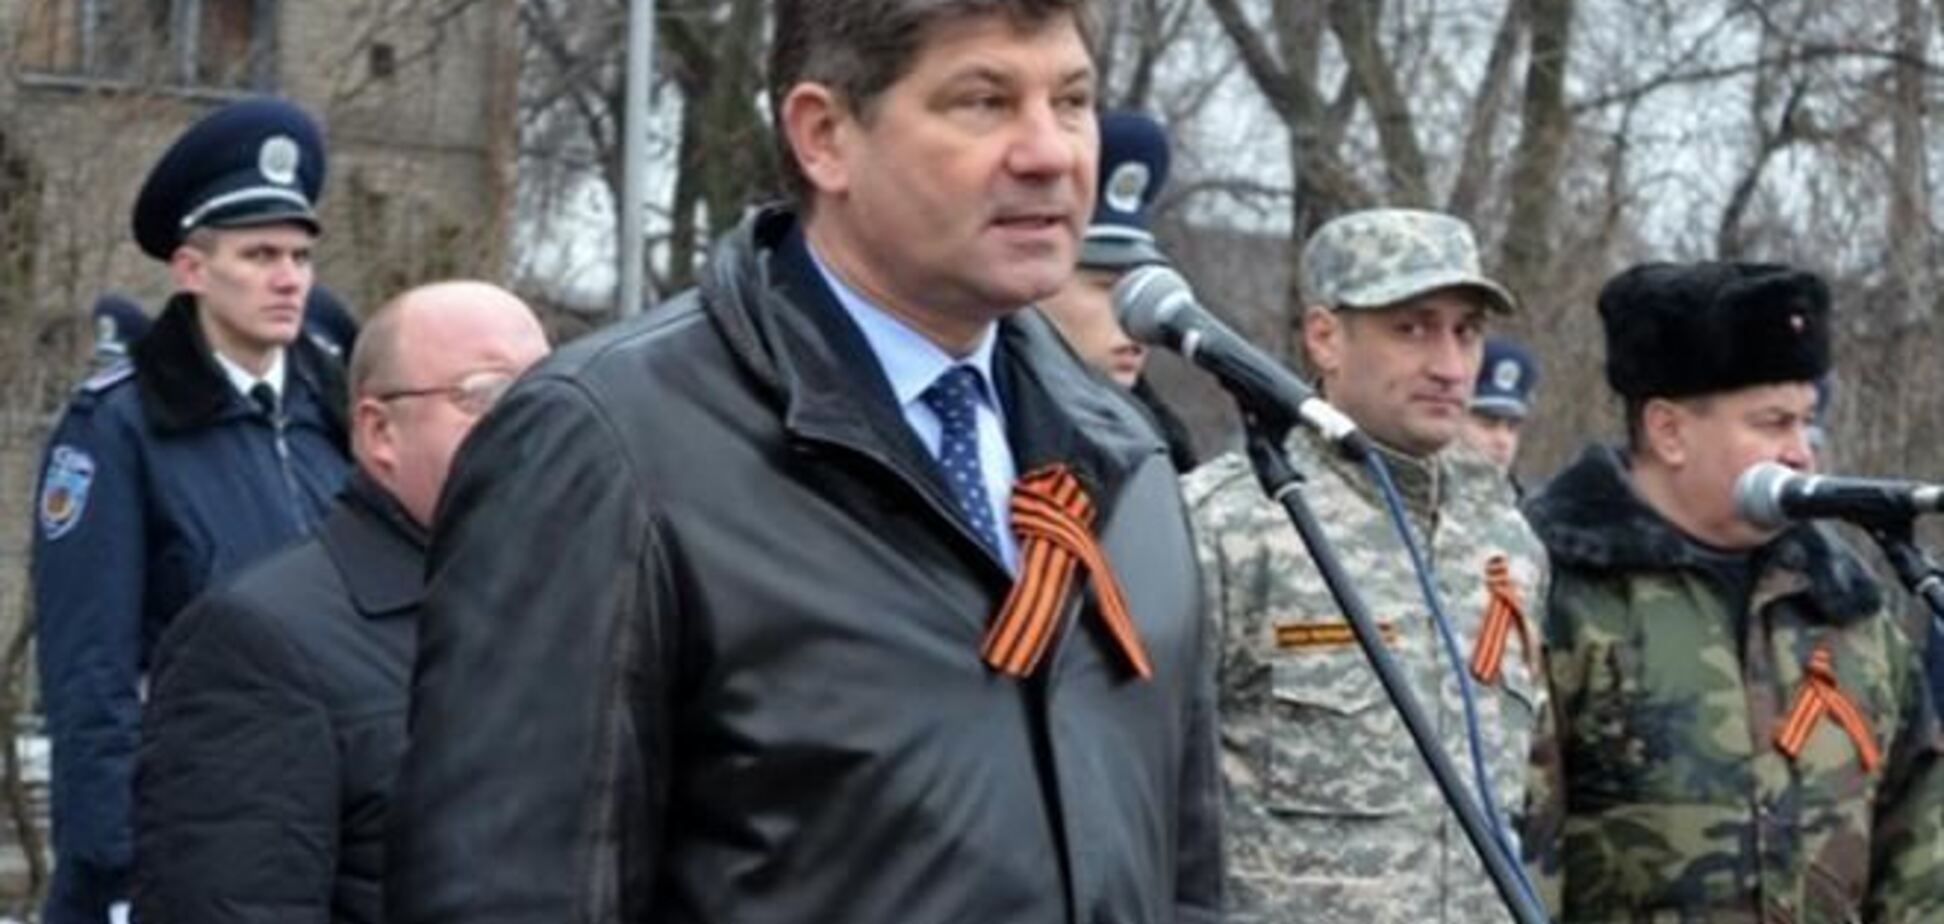 Мер Луганська закликав навести порядок в країні 'жорстко і безкомпромісно'